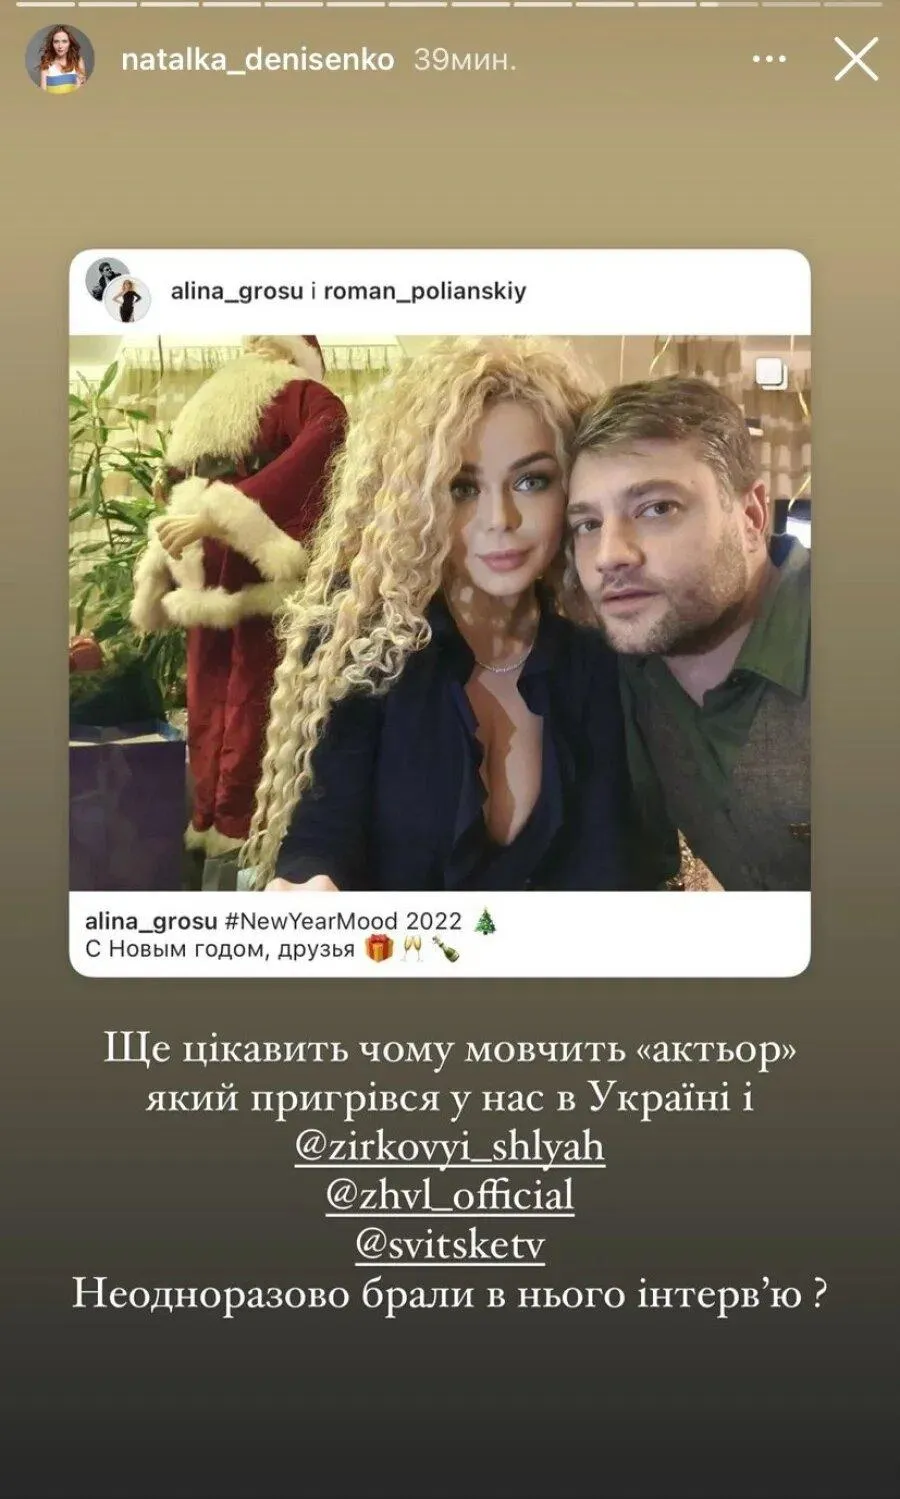 Скриншот из инстаграммы Наталки Денисенко